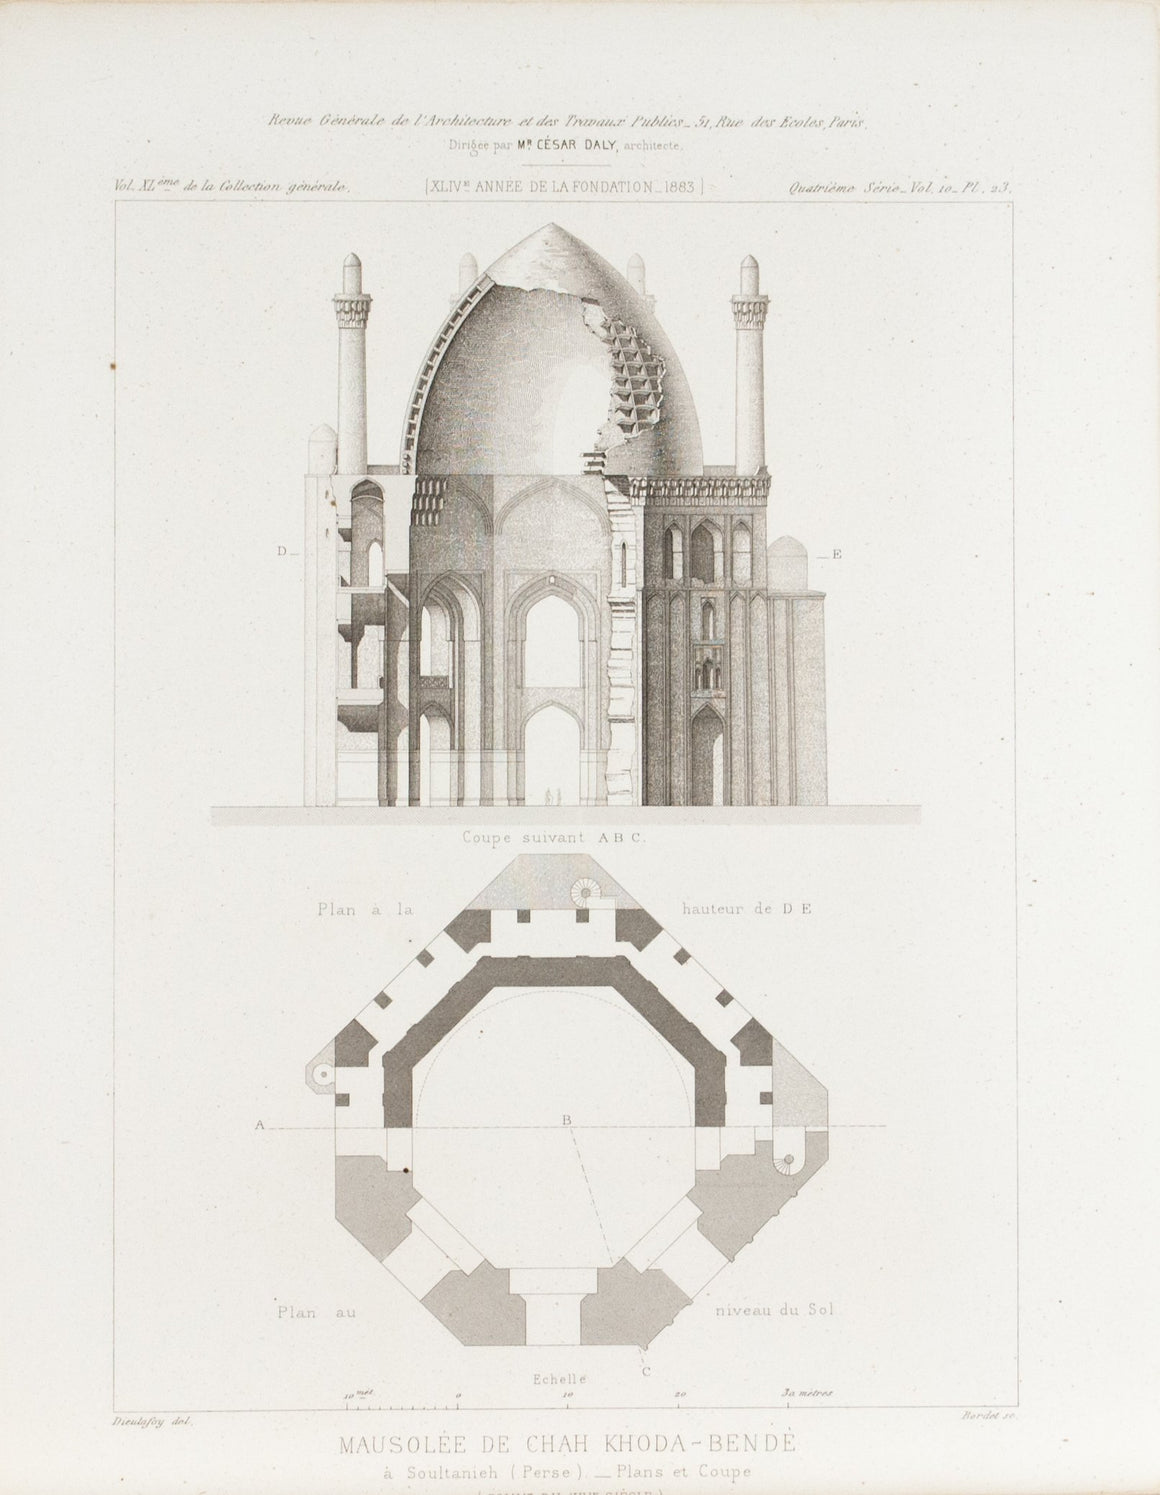 Dome Design Architectural Building Plans 1883 Architecture Print